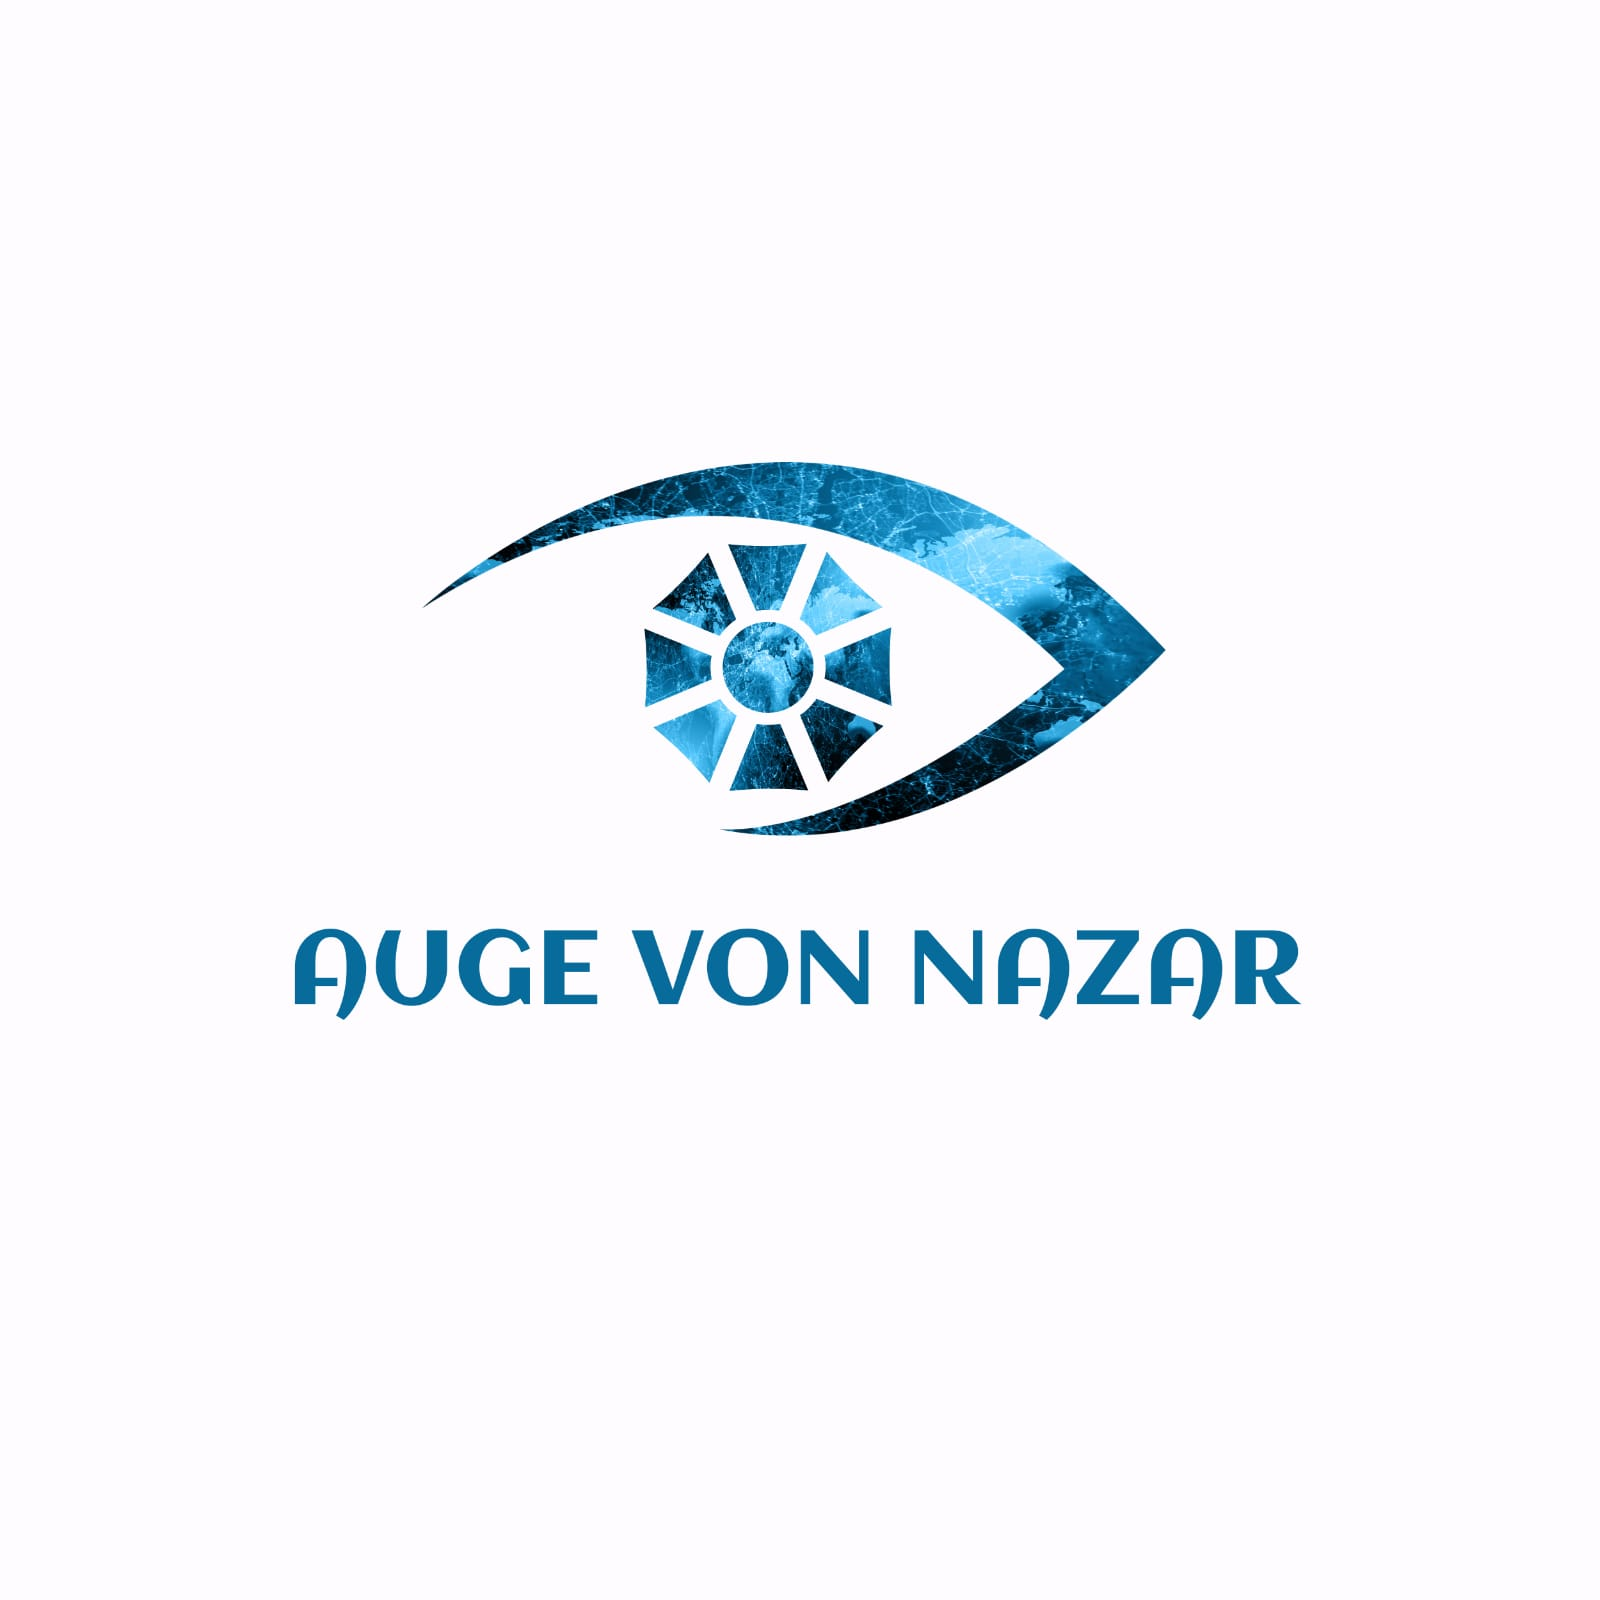 Company Logo For Auge von nazar'